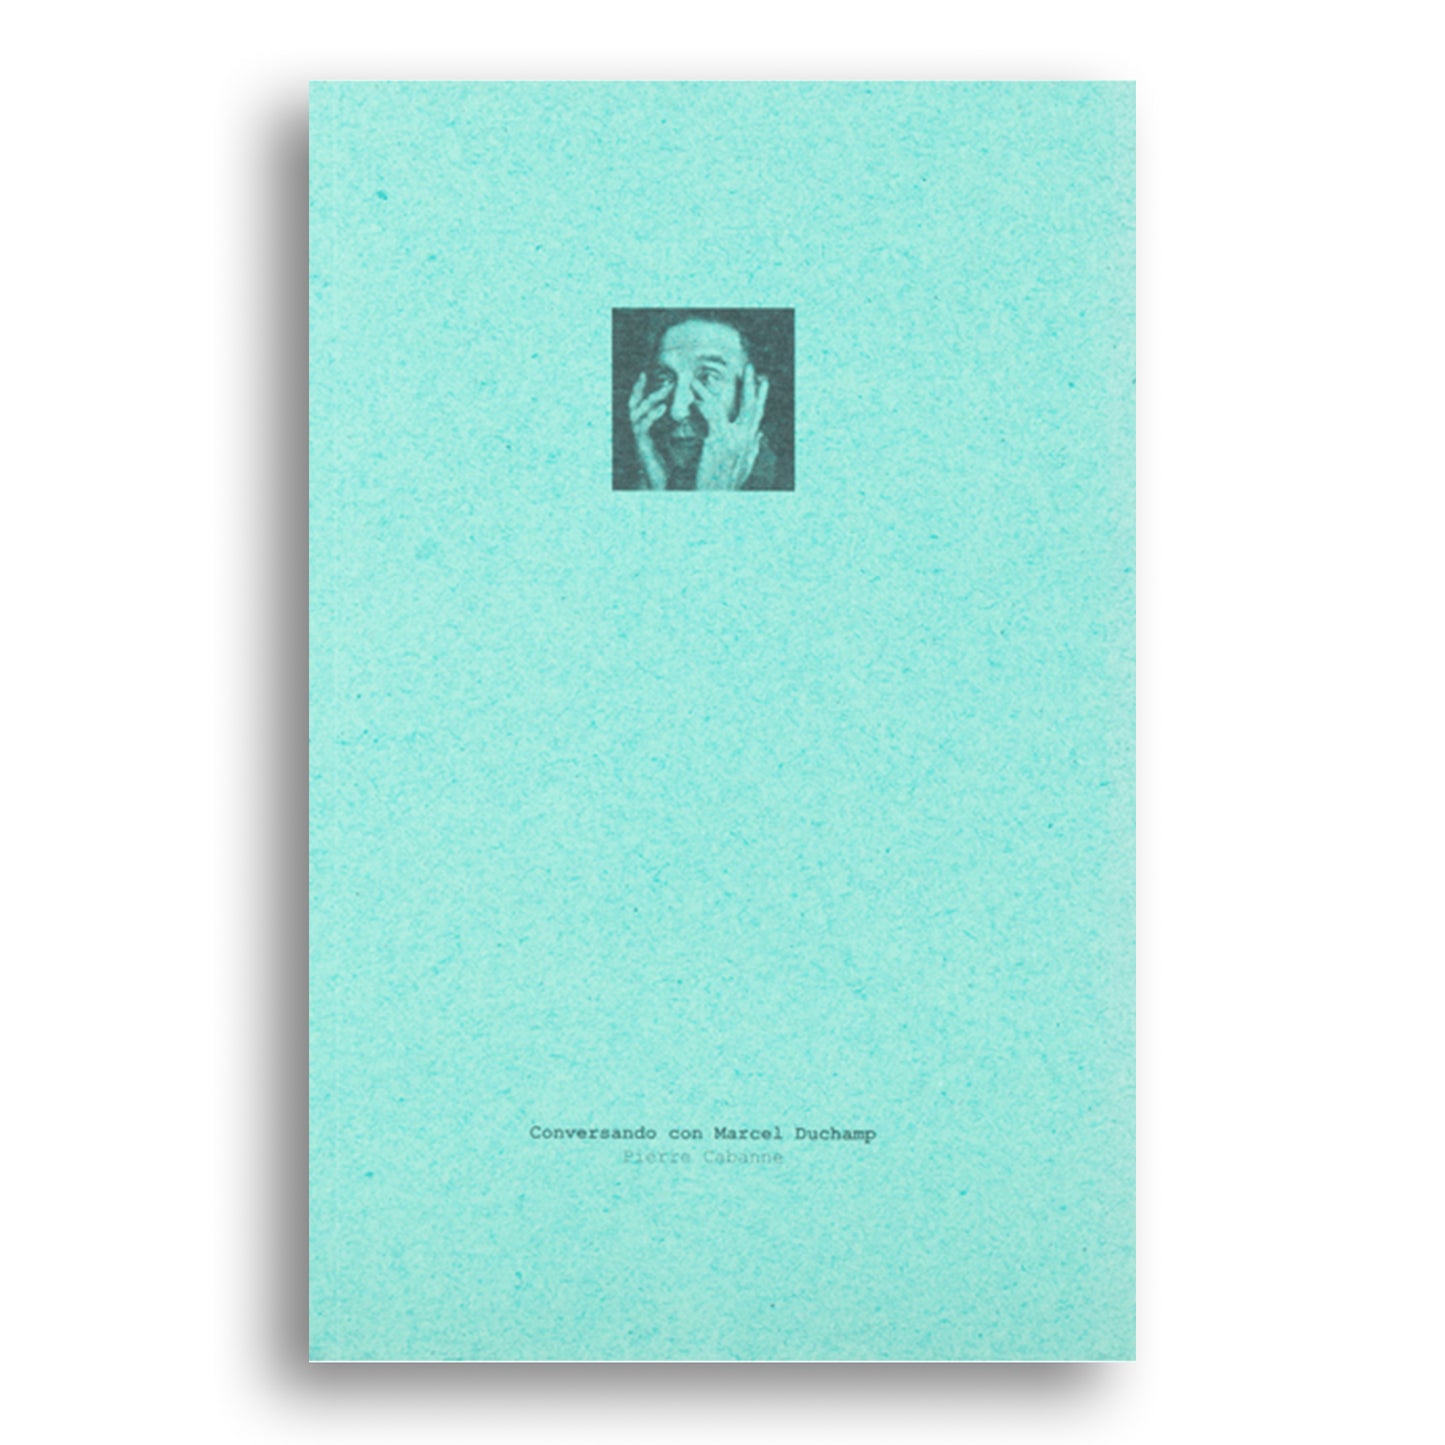 Conversando con Marcel Duchamp